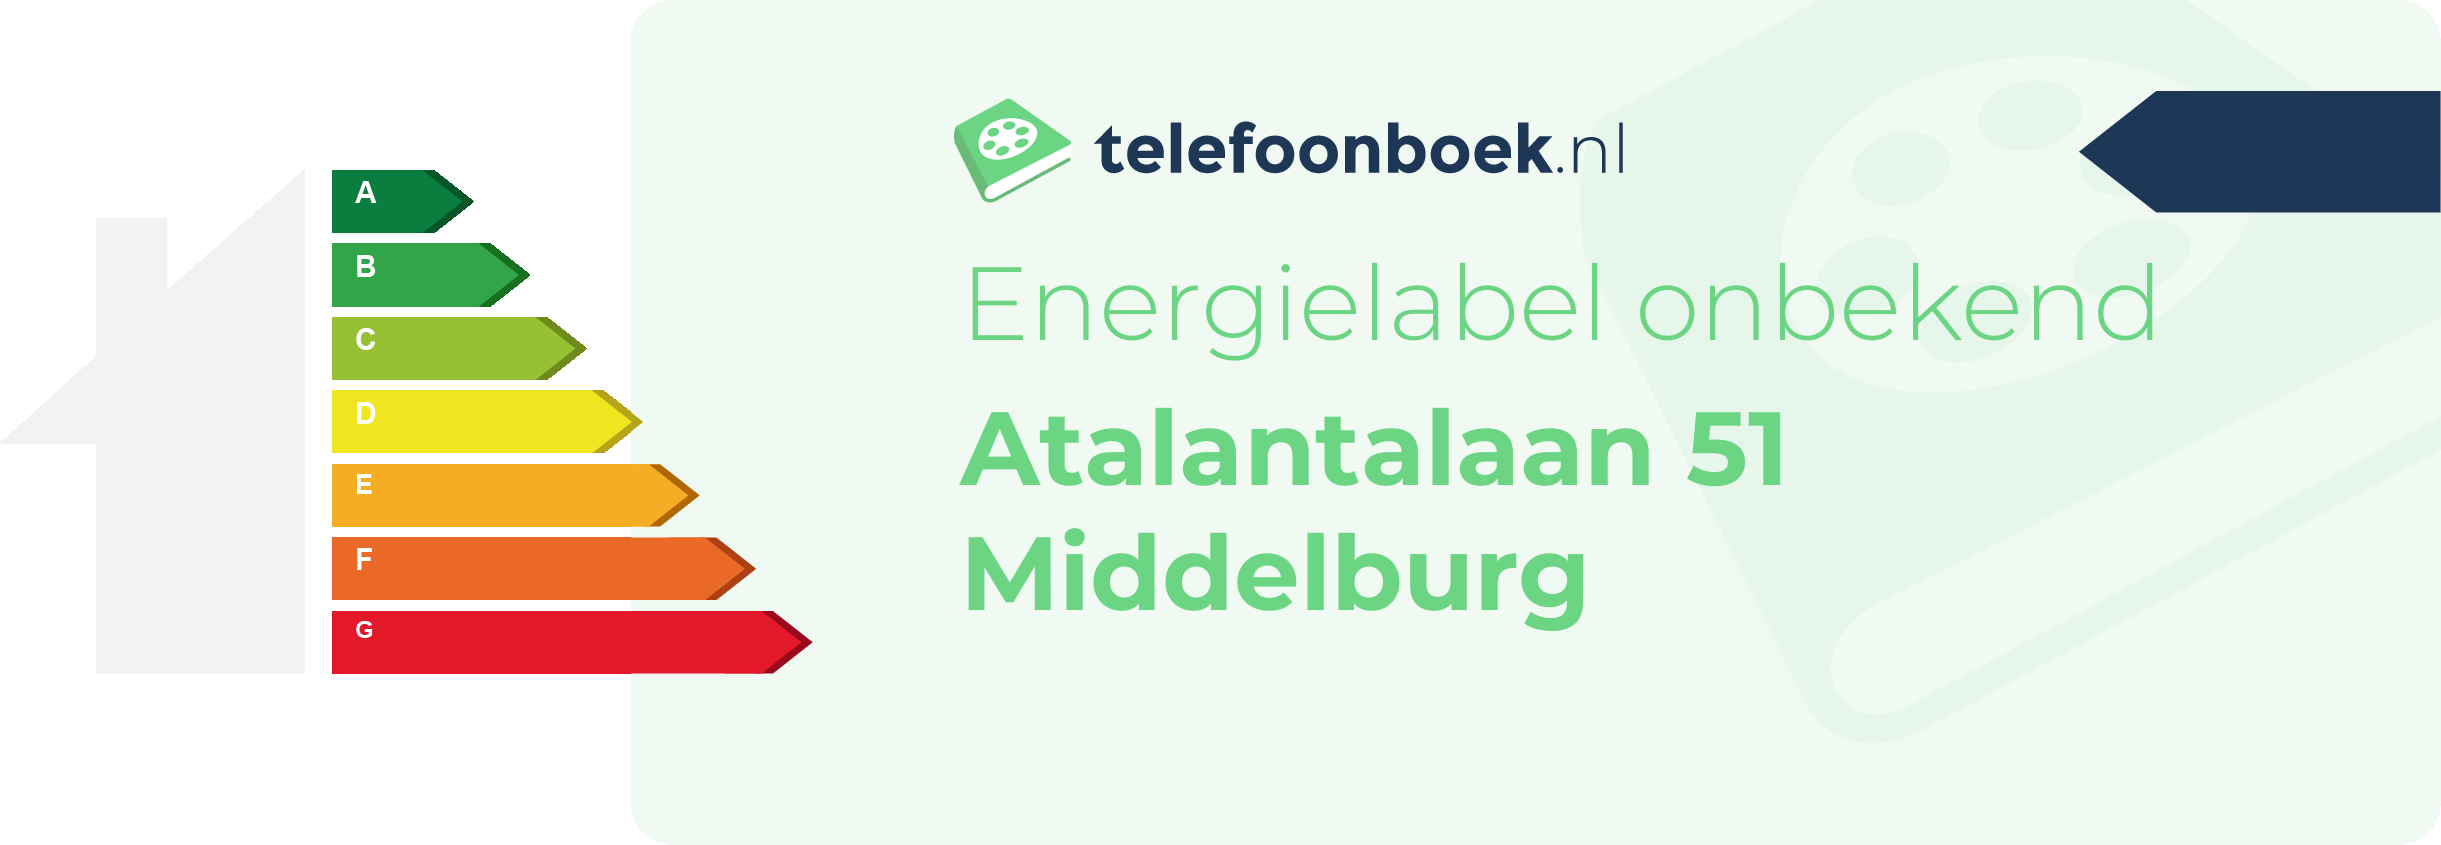 Energielabel Atalantalaan 51 Middelburg